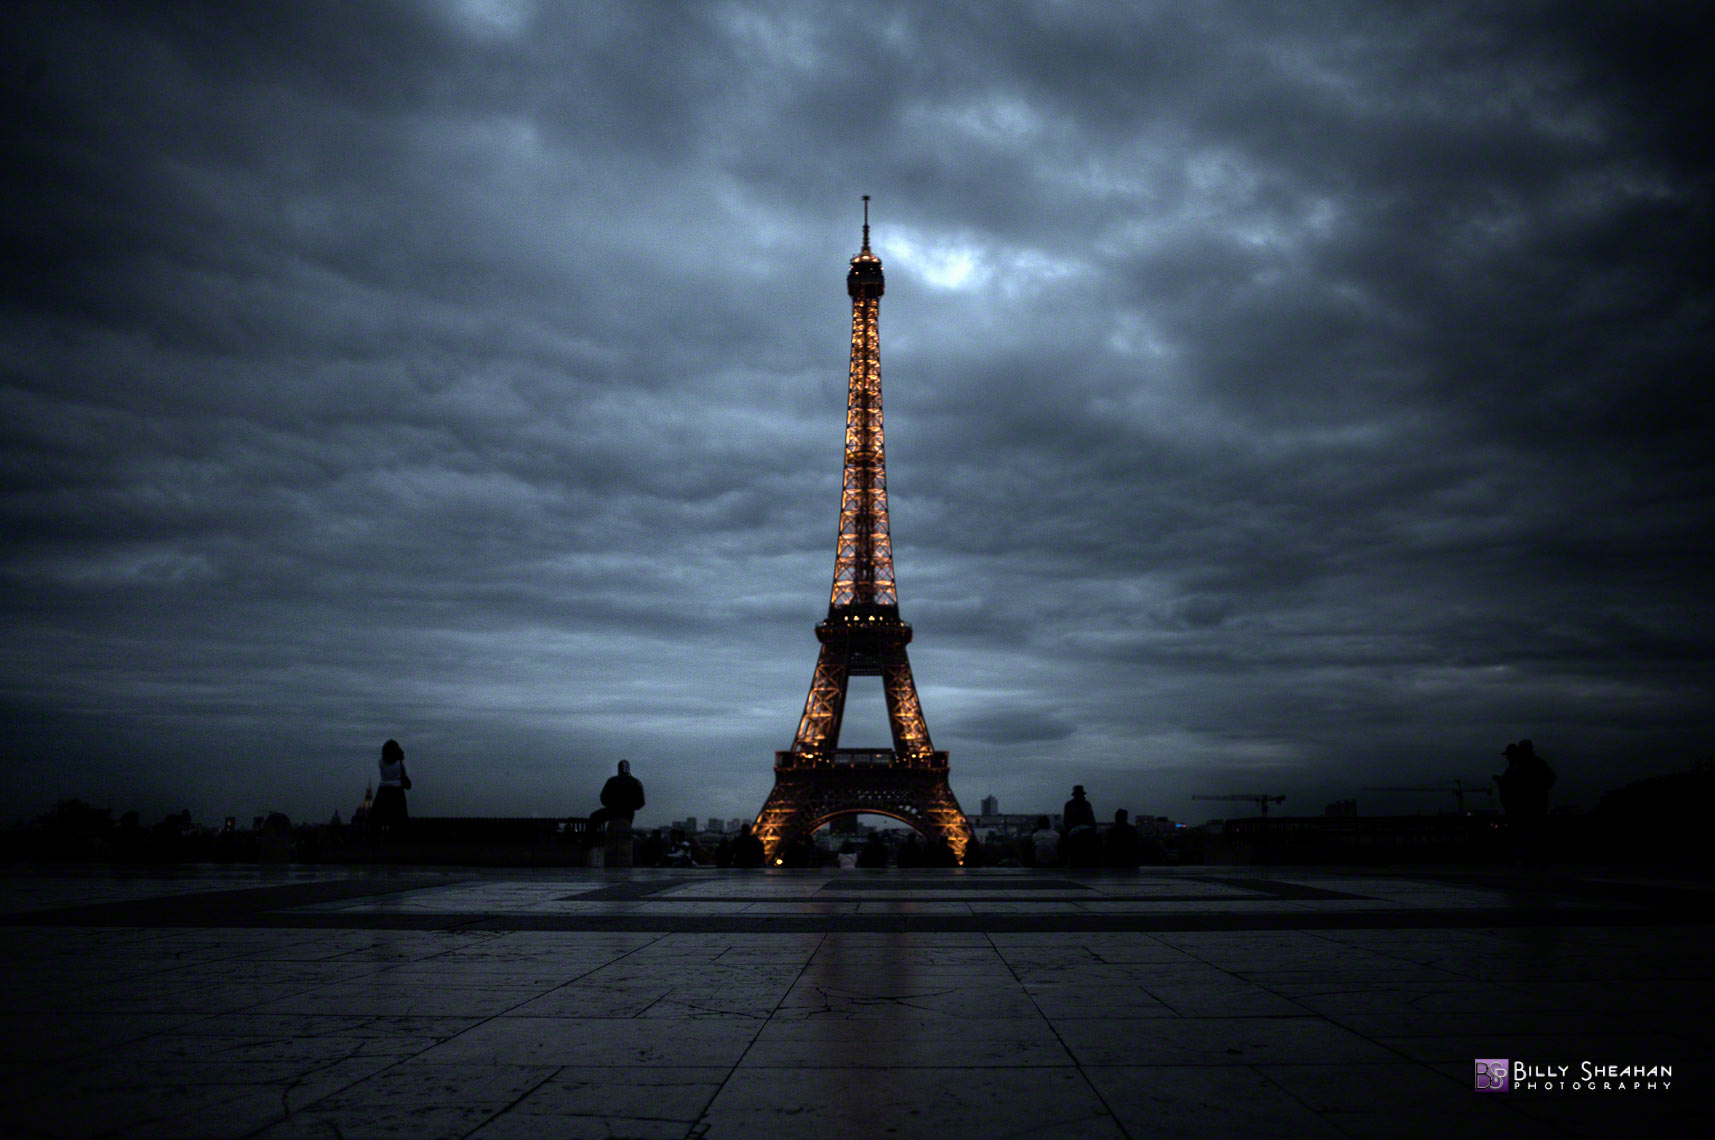 La_Tour_Eiffel_a_Place_de_Trocadero__Paris__France_Paris2008_24Apr2008_0463_4_5_C_D